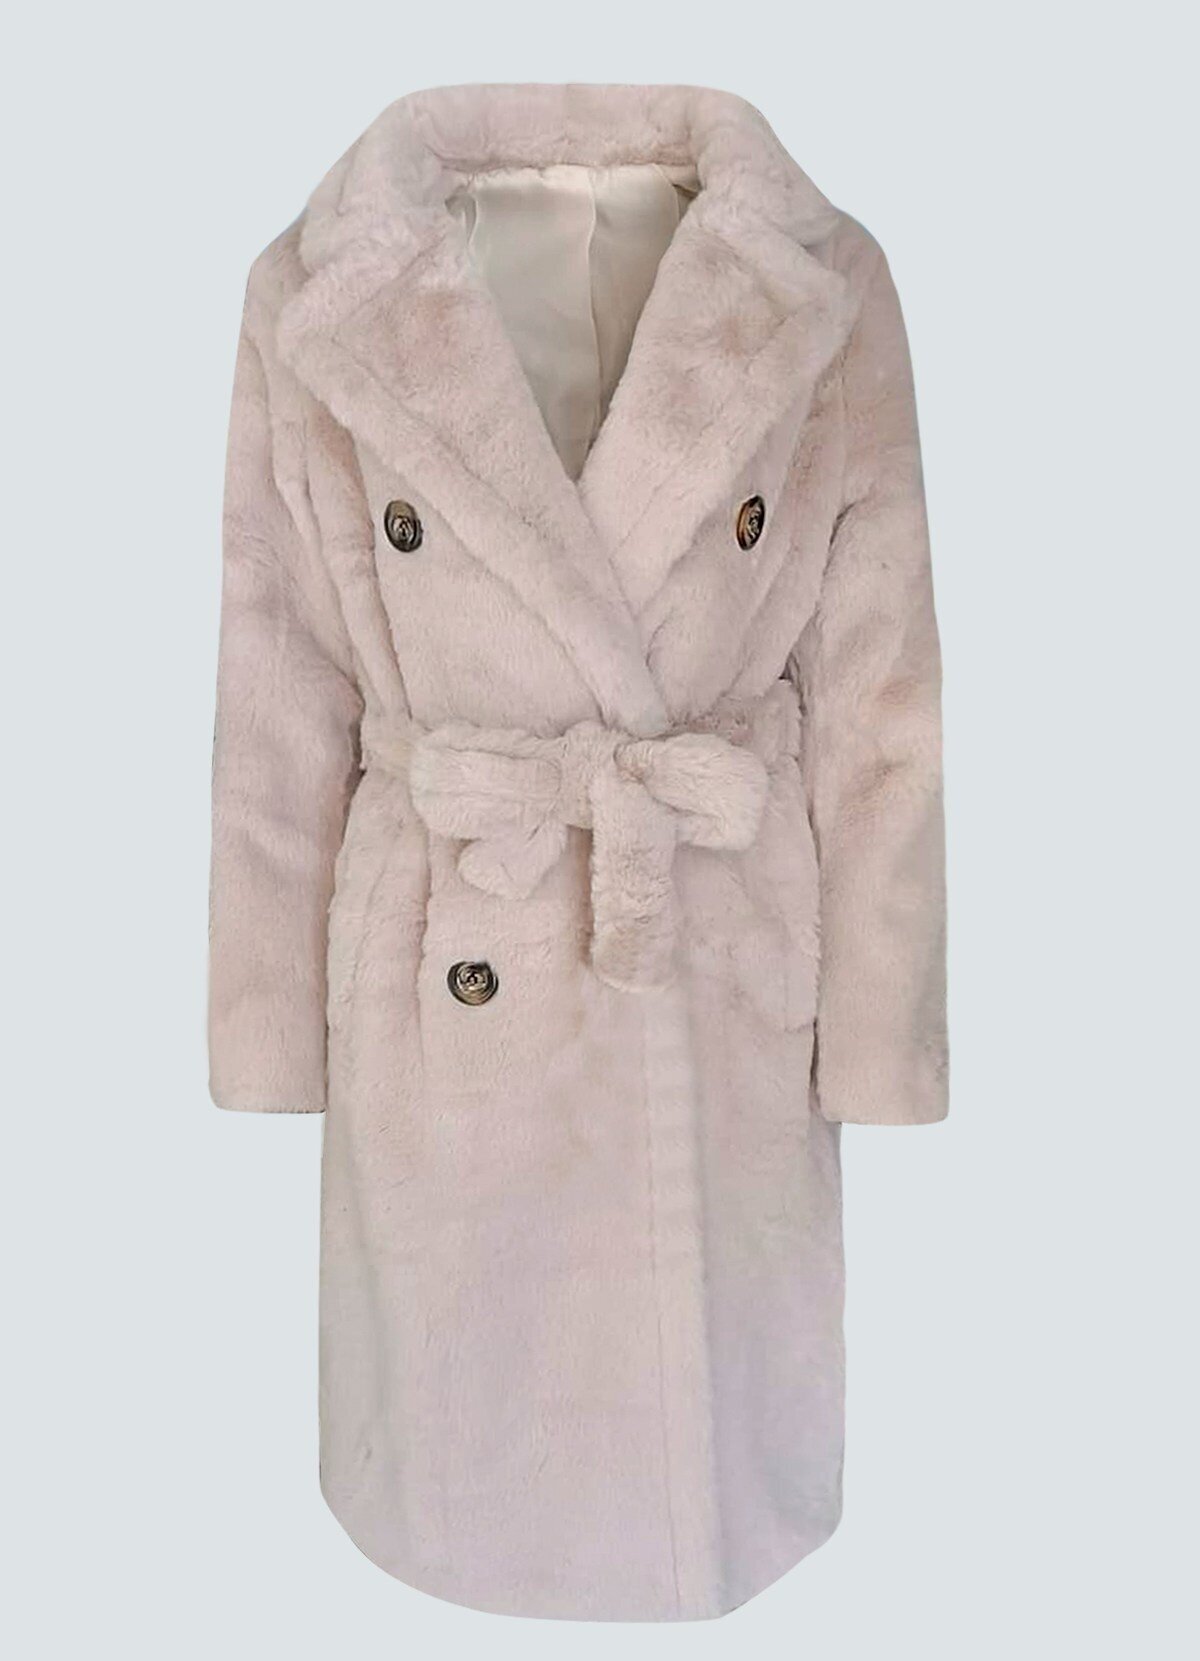 γούνινο μακρύ παλτό μεσάτο με ζώνη - Parizianista.gr